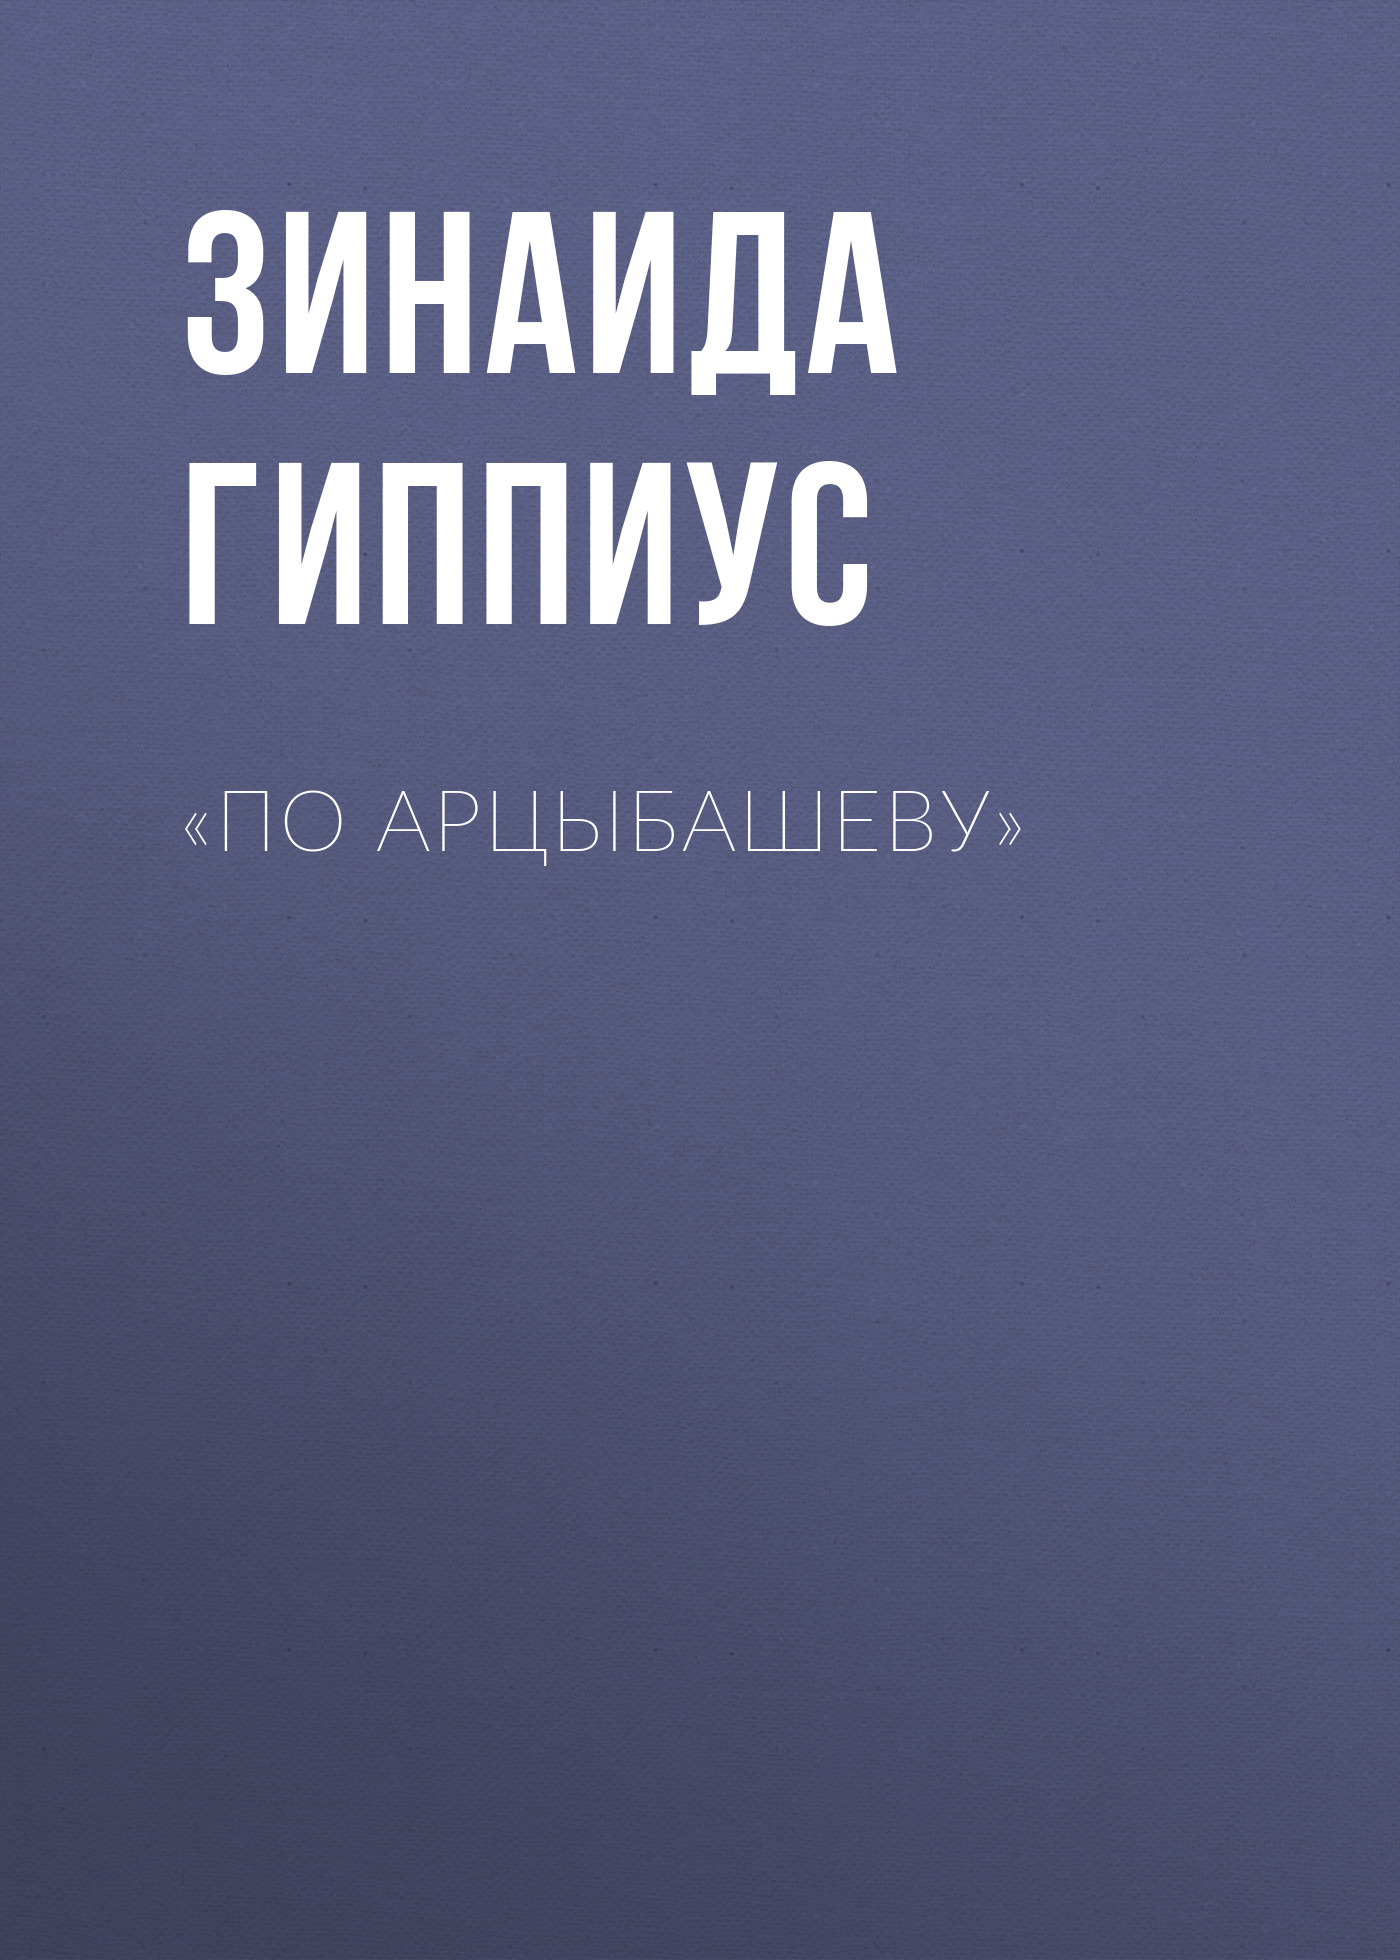 Книга «По Арцыбашеву» из серии , созданная Зинаида Гиппиус, может относится к жанру Критика. Стоимость электронной книги «По Арцыбашеву» с идентификатором 26121427 составляет 5.99 руб.